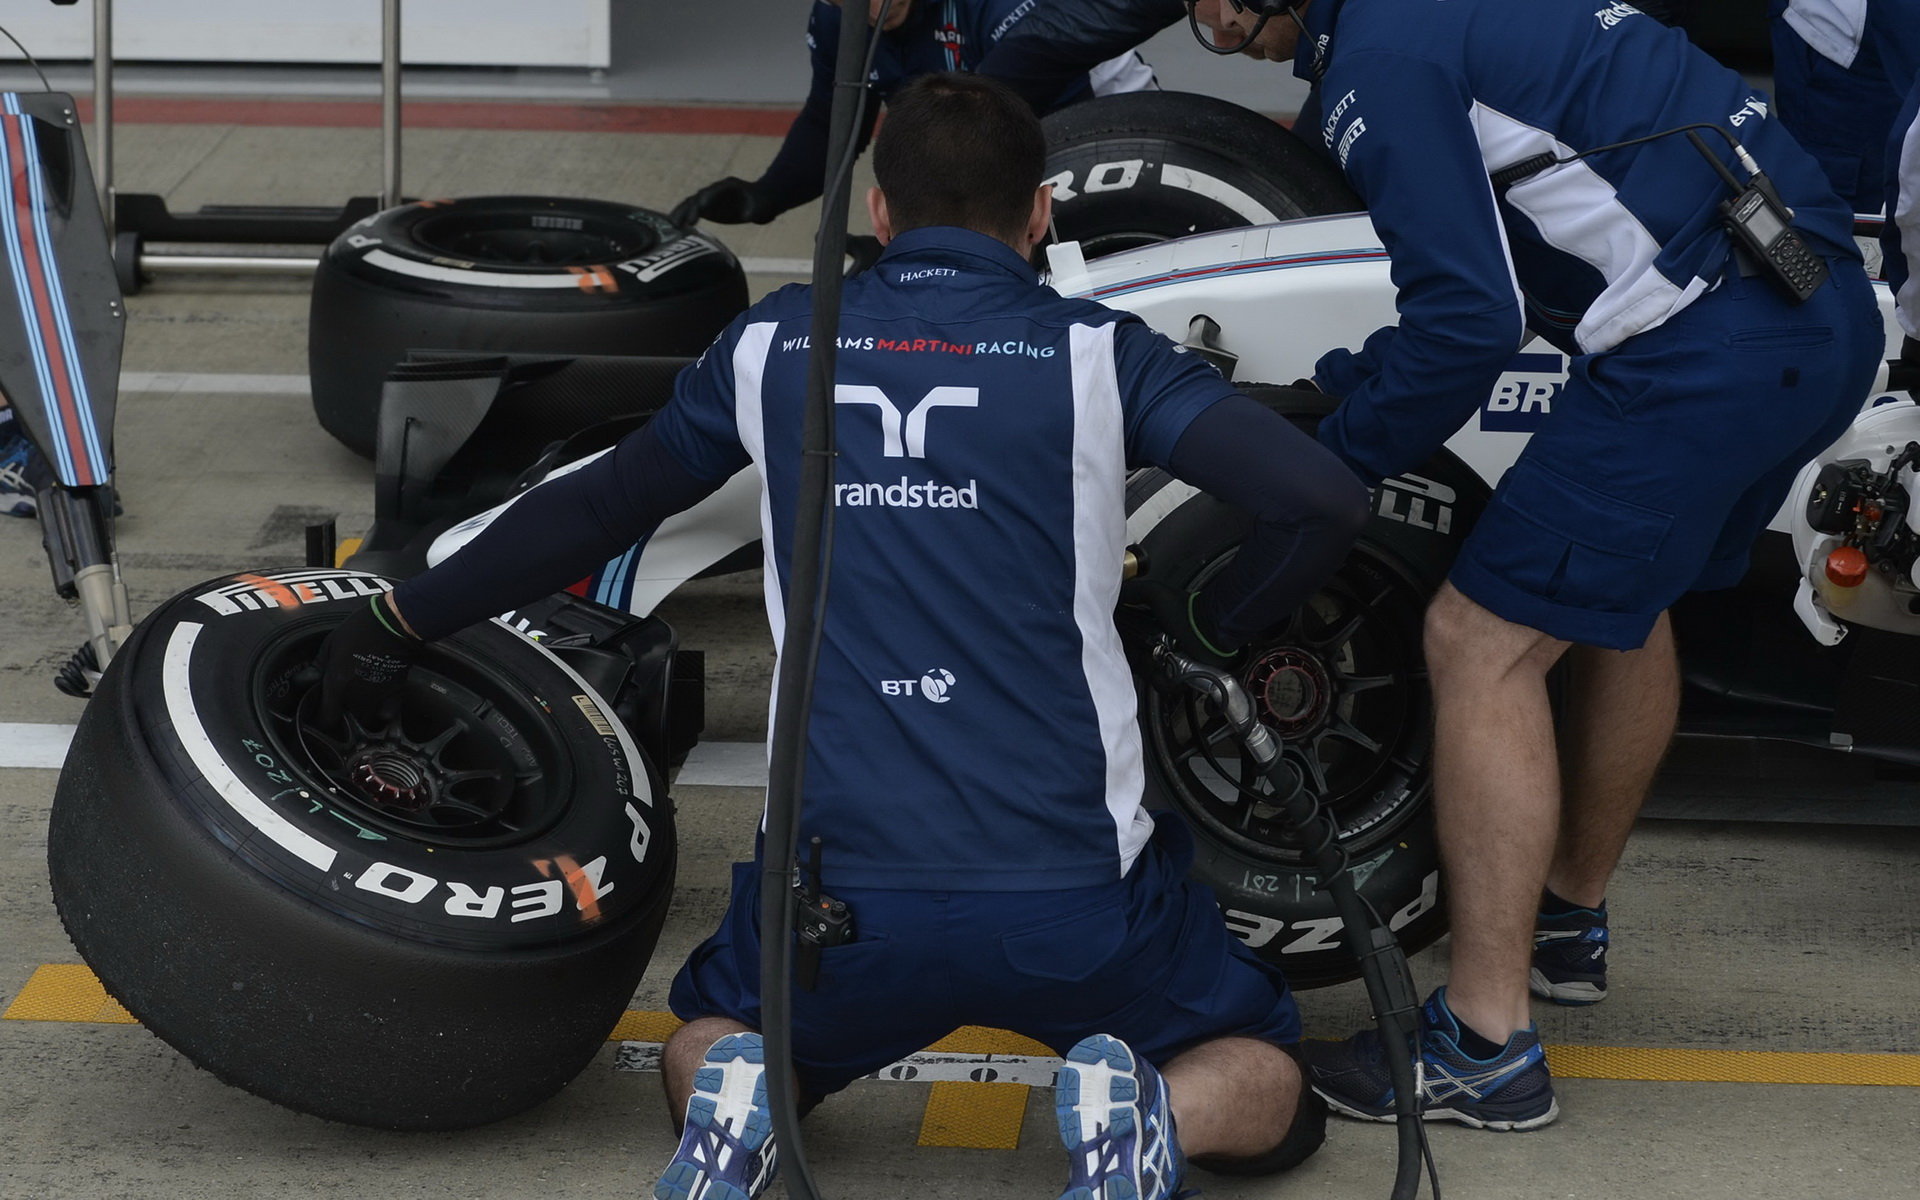 Tým mechaniků Williams při posledních sezónních testech v Silverstone, druhý den